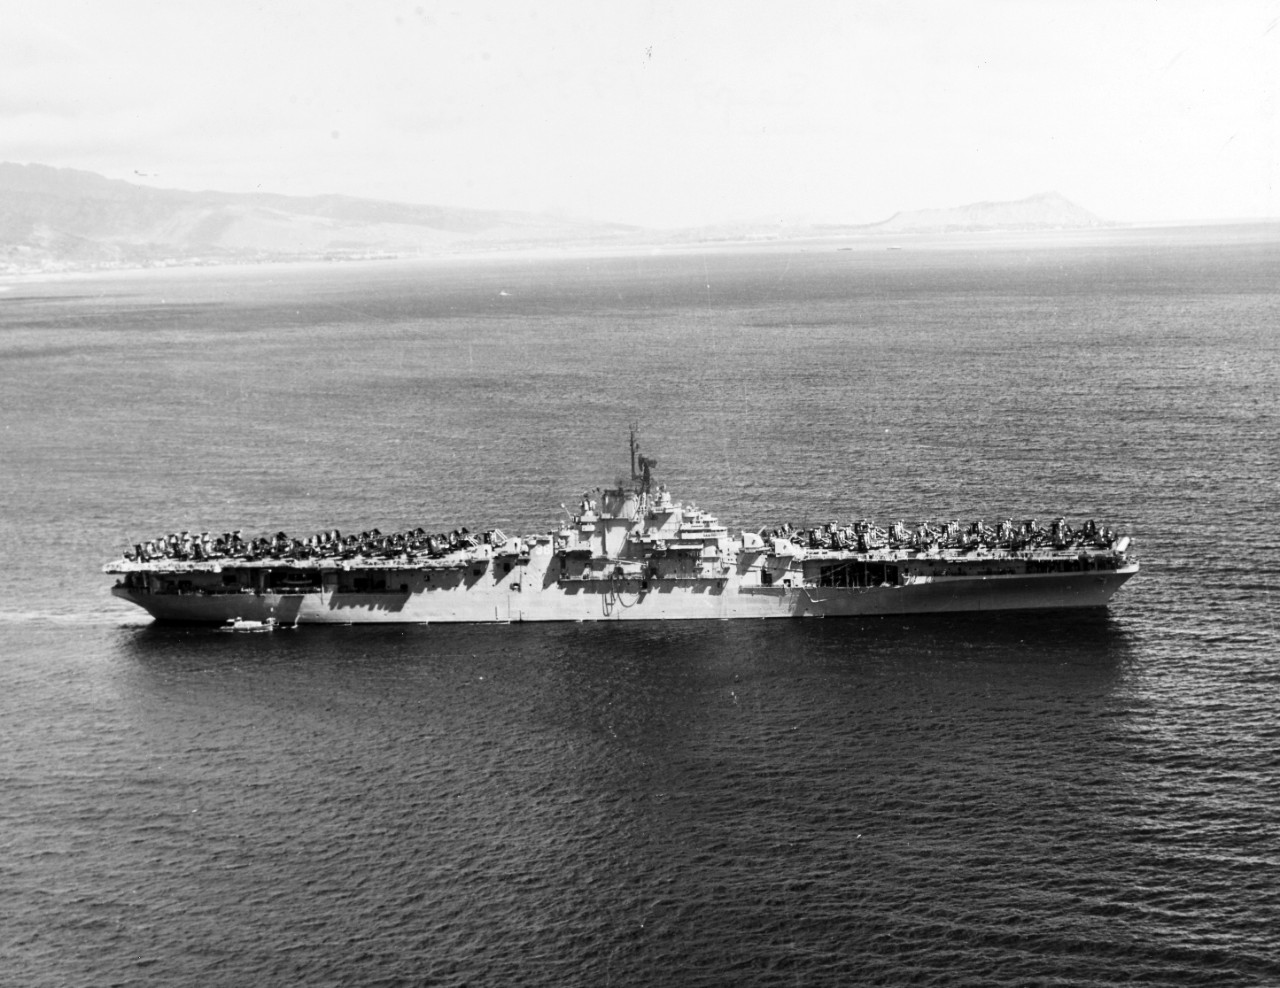 Photo #: 80-G-442409  USS Antietam (CV-36)